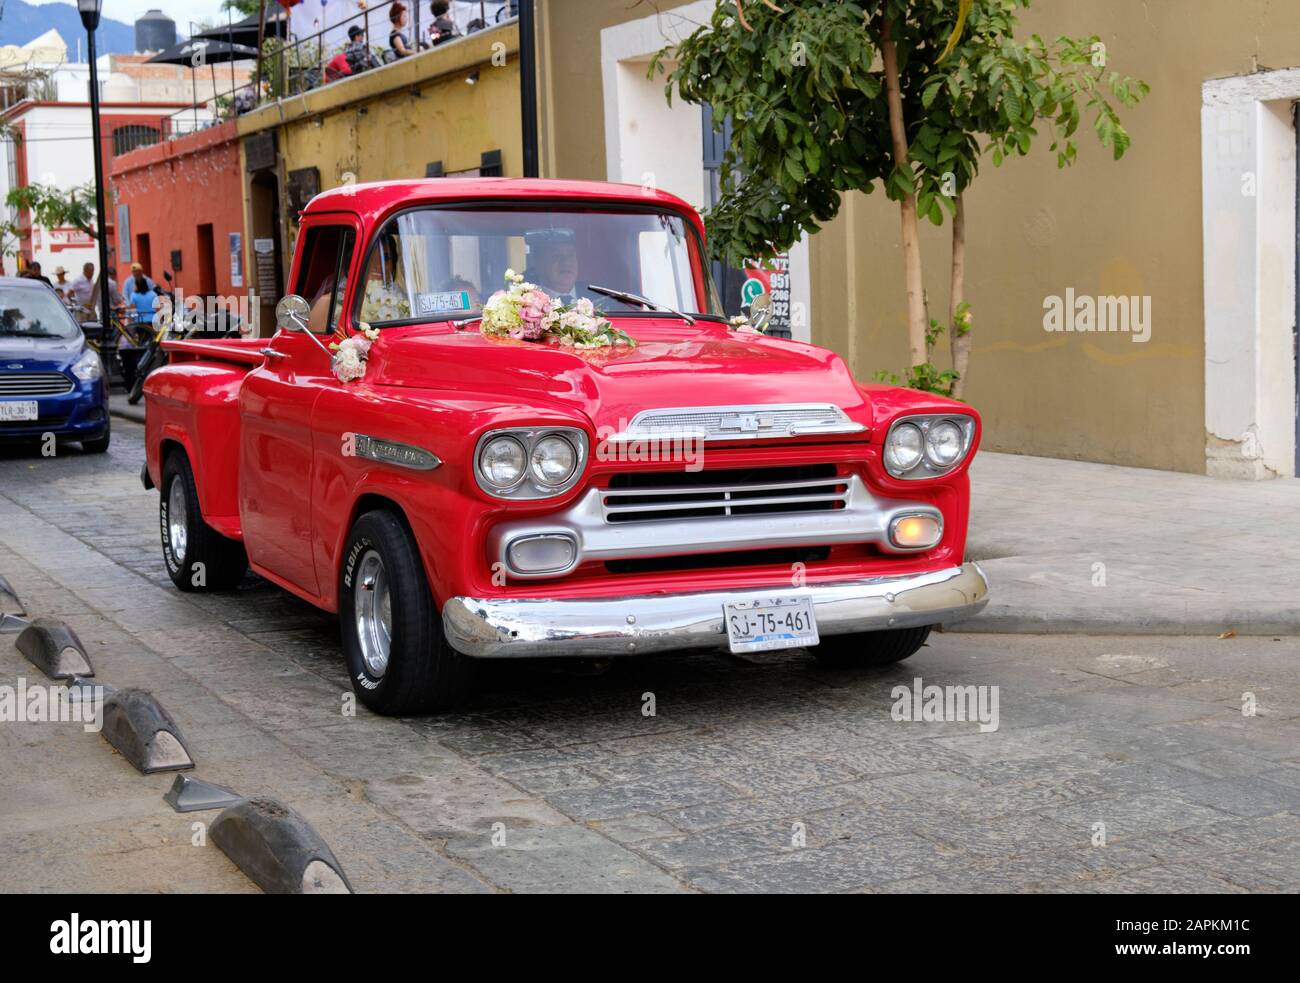 Red Chevrolet Apache Truck, Teil der Hochzeitsfeier, auf der Straße Old Colonial Old Town Oaxaca, Mexiko Stockfoto